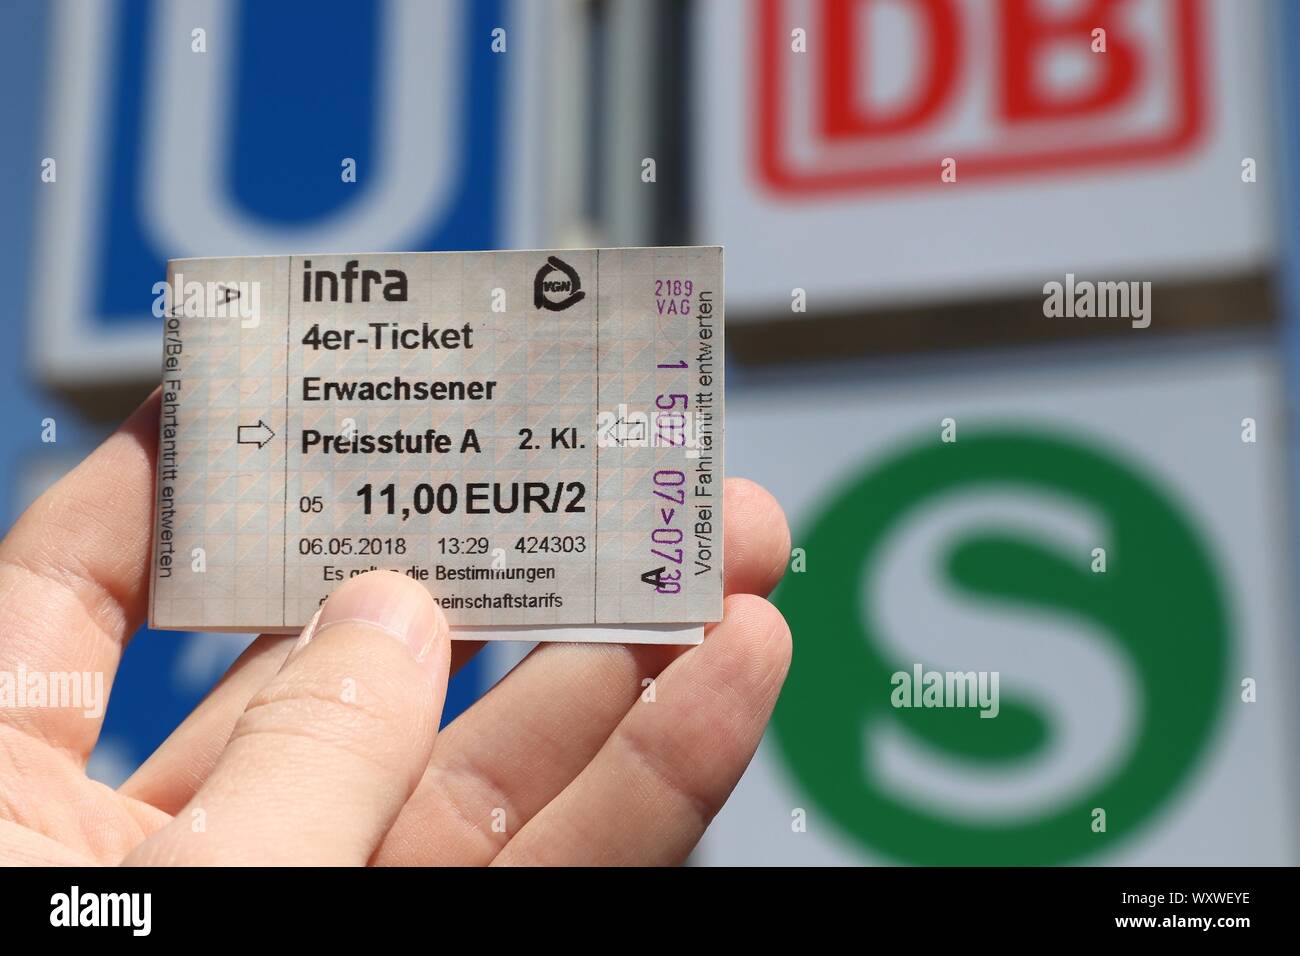 NUREMBERG, ALLEMAGNE - le 7 mai 2018 : l'achat de billets pour les  transports publics (VAG) à Nuremberg, Allemagne. Nuremberg est situé dans  la région de Moyenne-franconie. 511 628 peop Photo Stock - Alamy